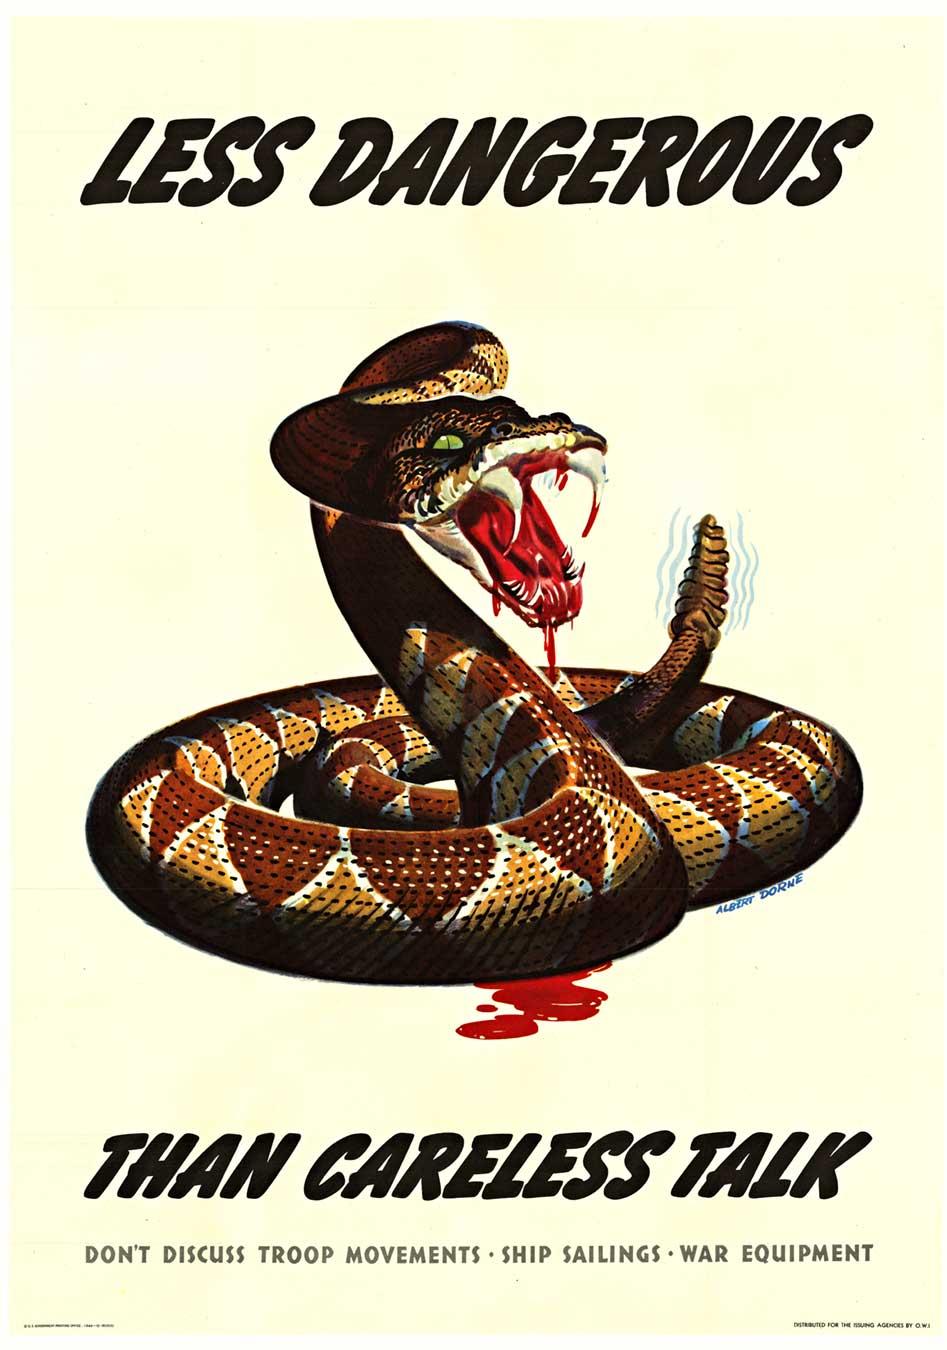 Affiche originale de la Seconde Guerre mondiale "Less Dangerous than Careless Talk" (Moins dangereux qu'une parole imprudente)